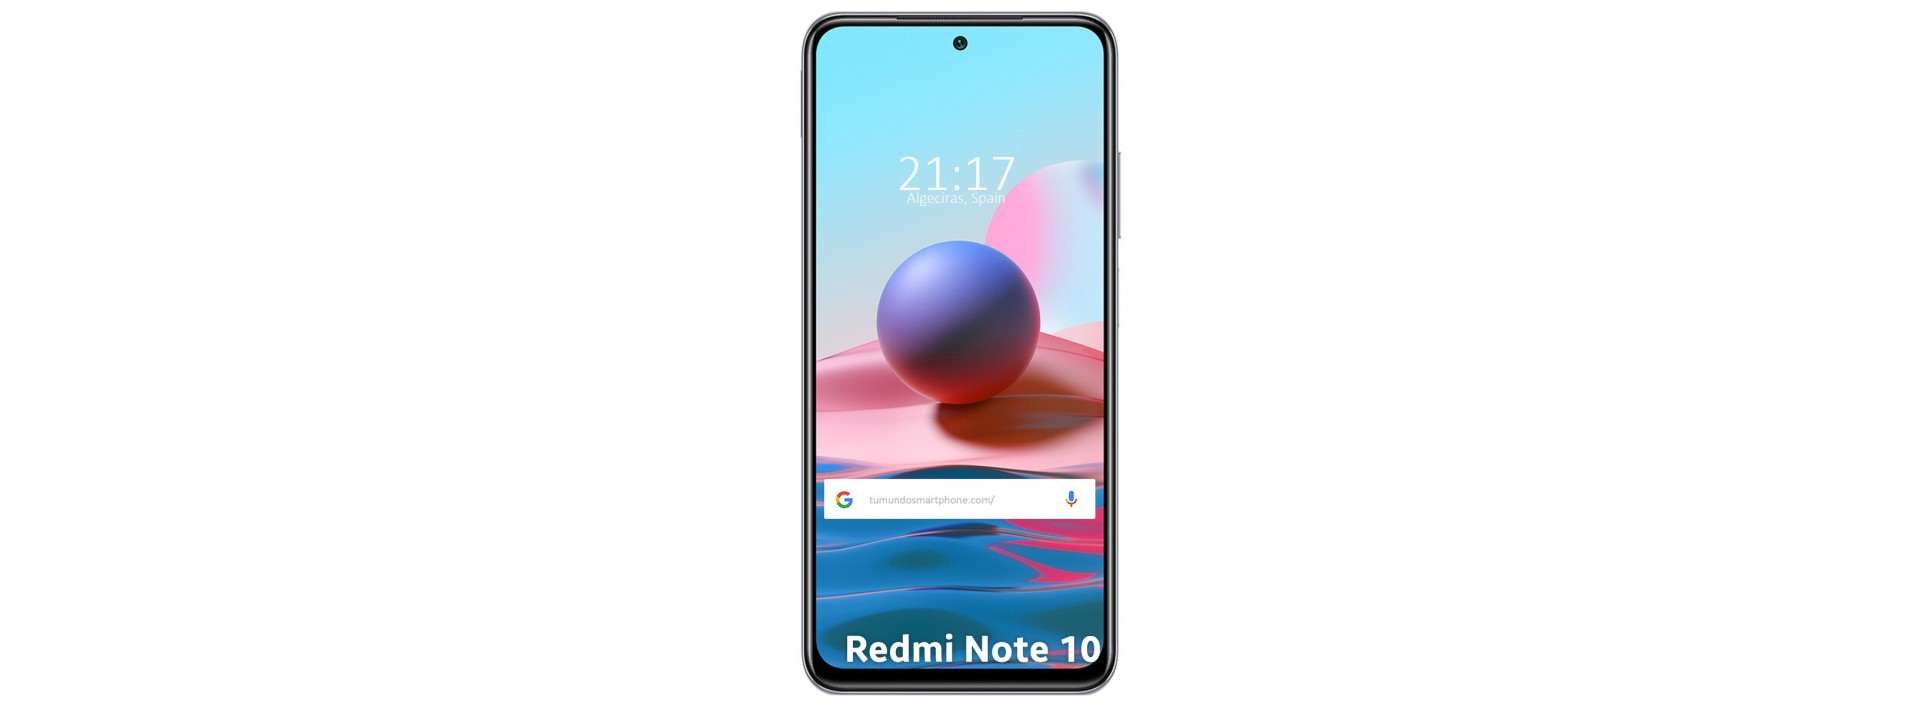 Funda suave y de color para el Xiaomi Redmi Note 10 4G/Note 10S